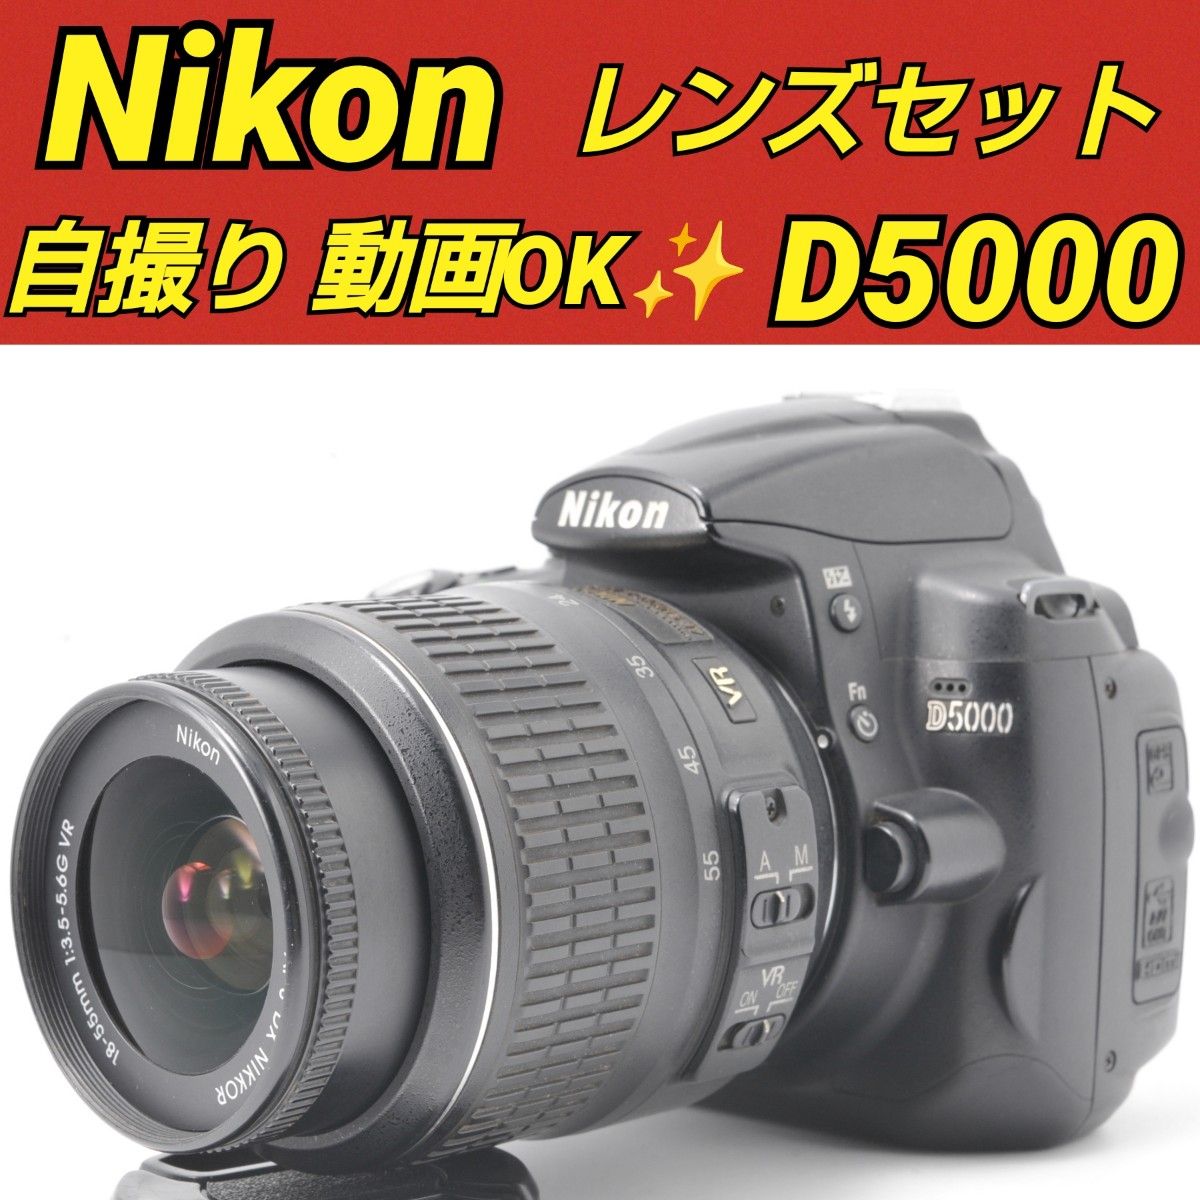 Nikon D5000 自撮り 動画 初心者おすすめ ニコン 届いてすぐ使える